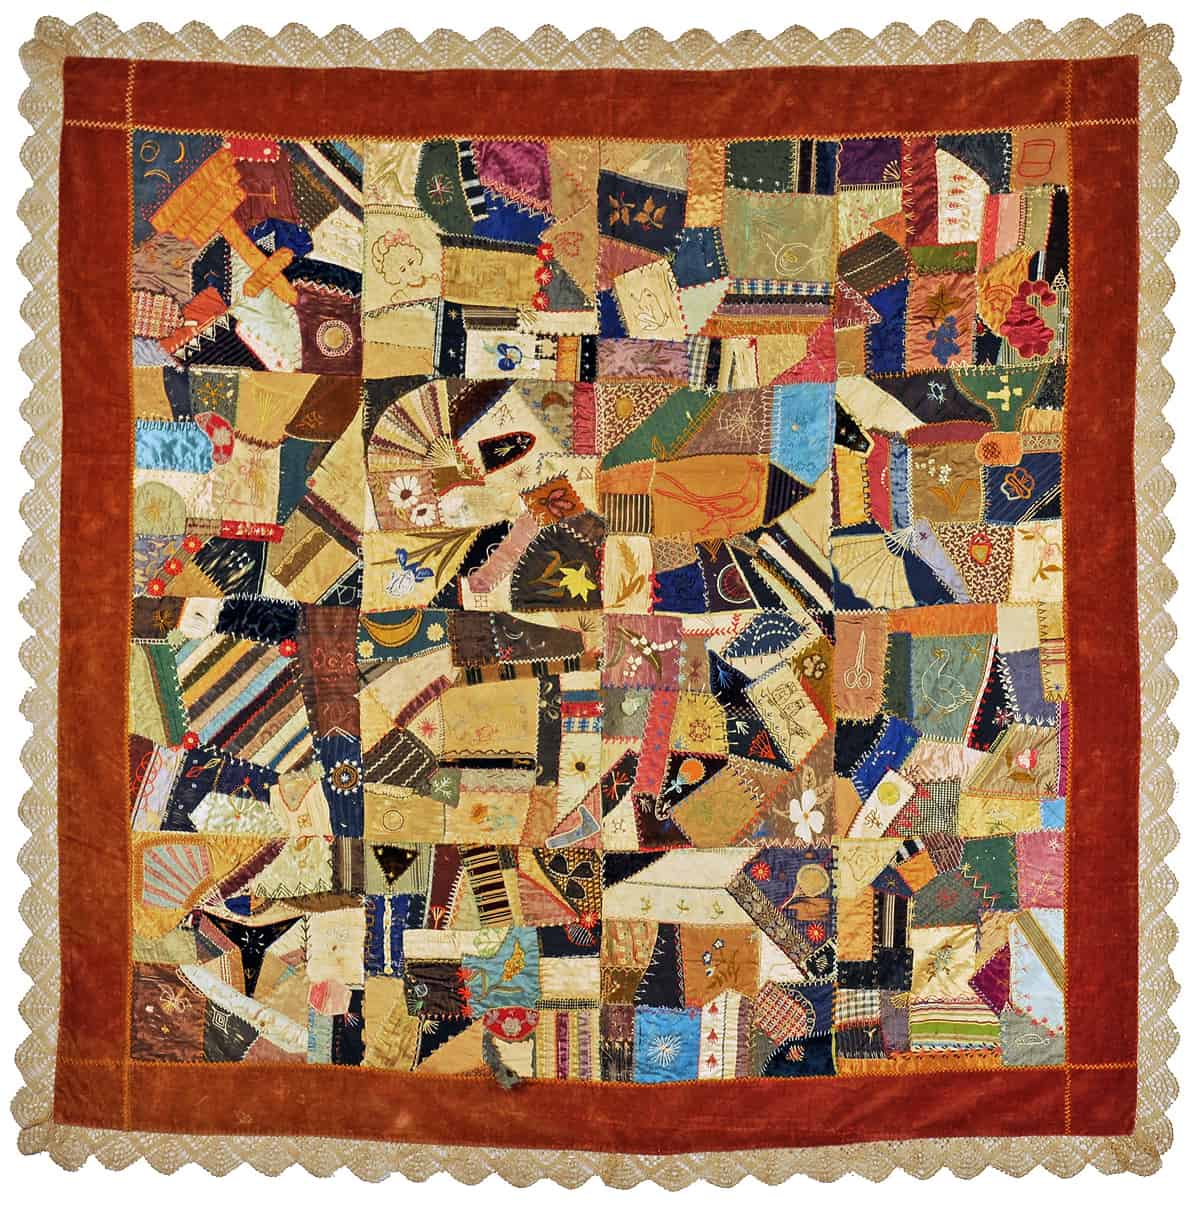 Crazy Quilt | Mary E. Fillow Poyvez, 1880s, East Norwalk, CT | Silk, velvet border, bobbin lace edging | 60″ x 60″ | Norwalk Historical Society FIC 2011